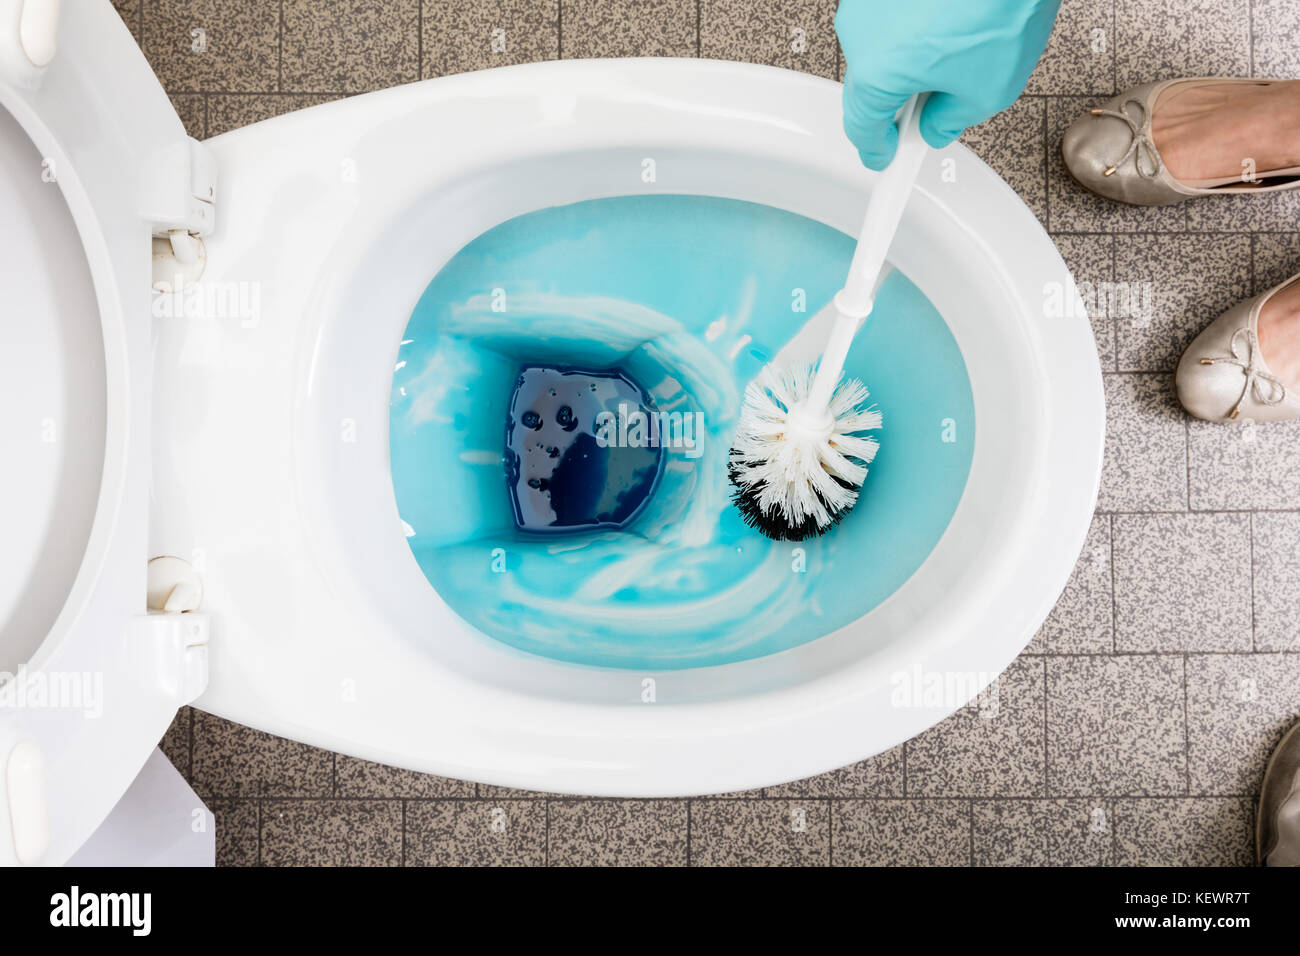 Portrait d'une personne nettoie une salle de bains toilettes avec une brosse  à récurer Photo Stock - Alamy